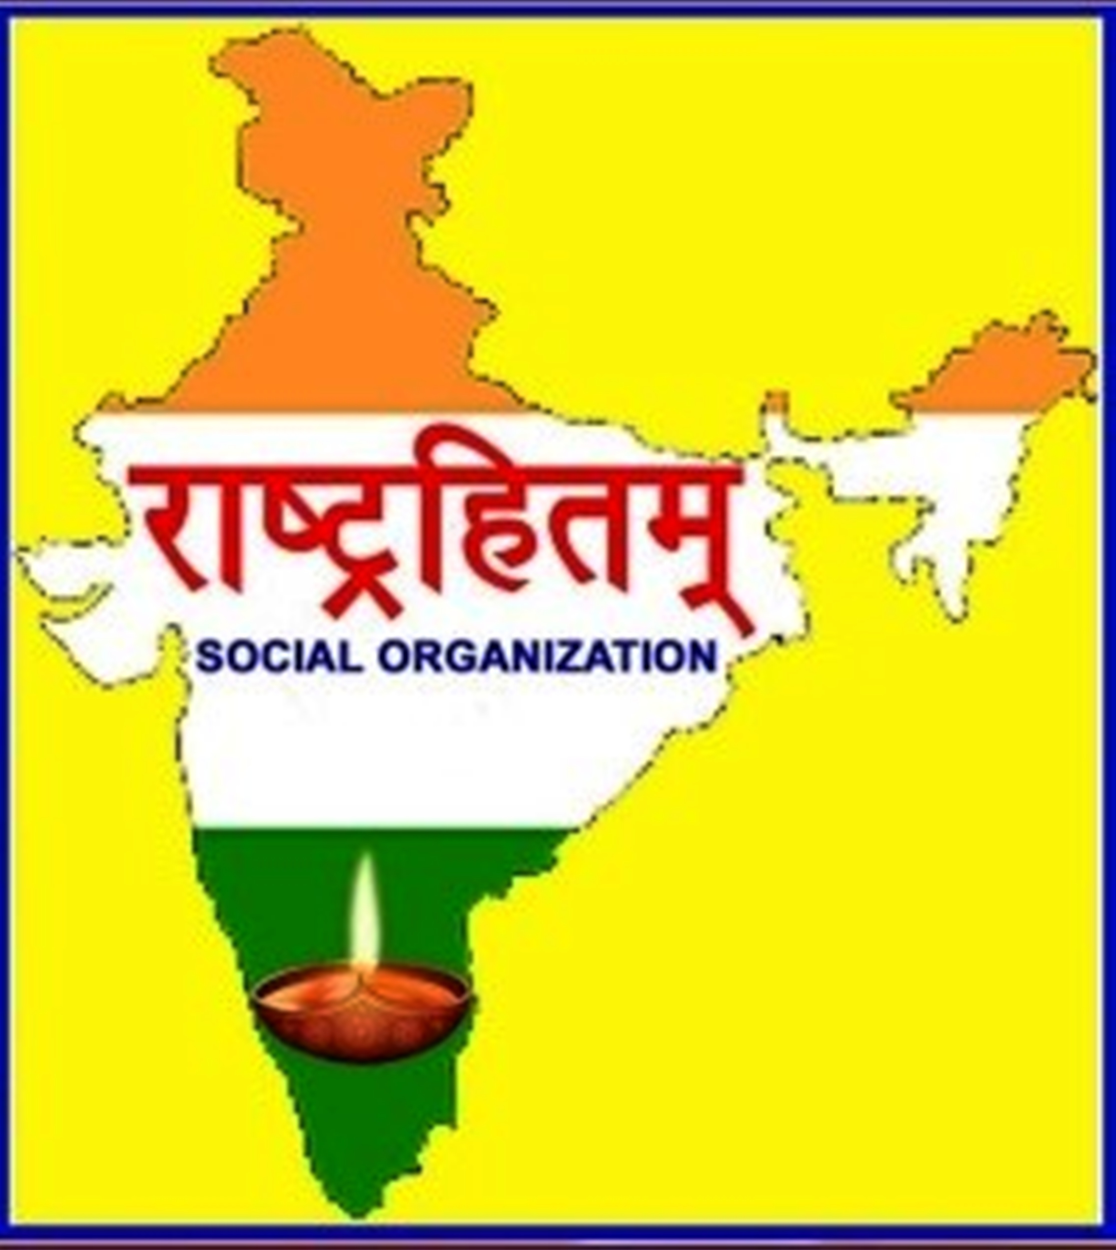 Rashtrahitam Social Organization